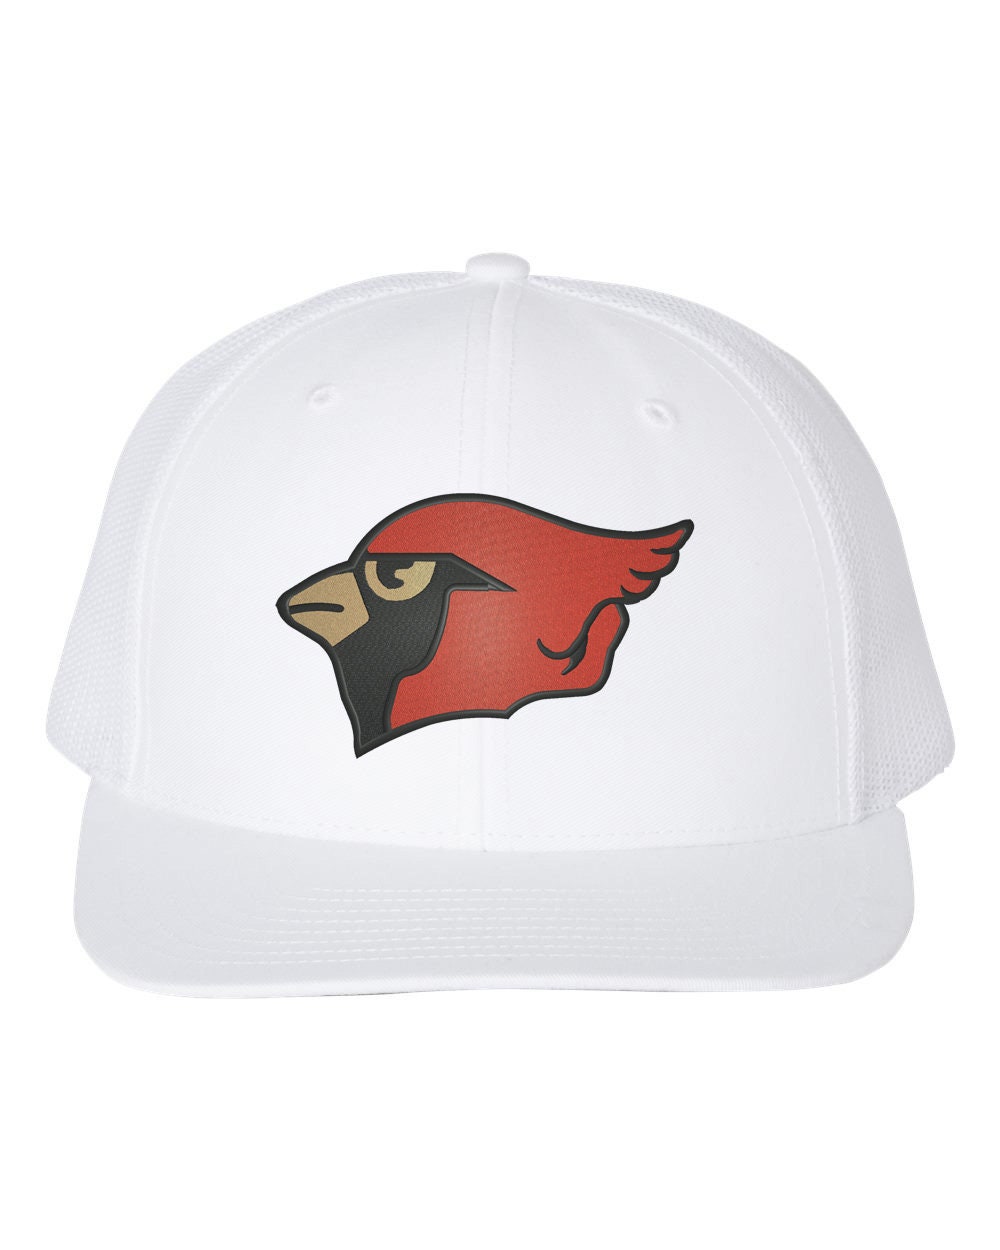 Cardinals Hats 